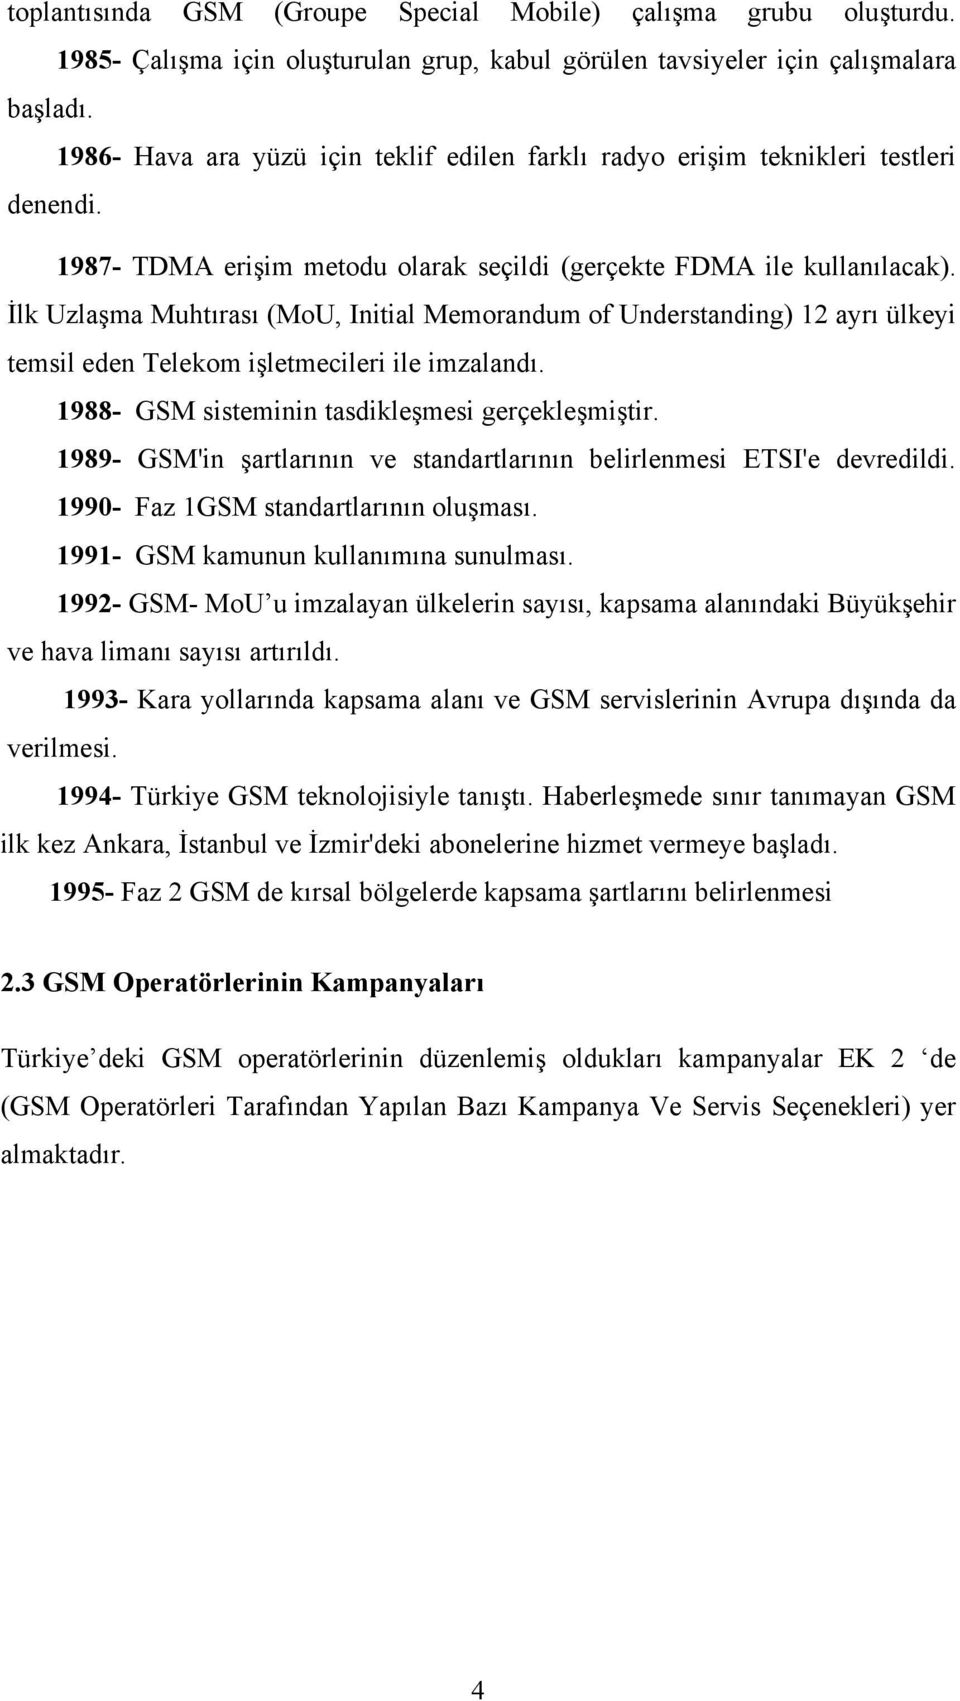 İlk Uzlaşma Muhtırası (MoU, Initial Memorandum of Understanding) 12 ayrı ülkeyi temsil eden Telekom işletmecileri ile imzalandı. 1988- GSM sisteminin tasdikleşmesi gerçekleşmiştir.